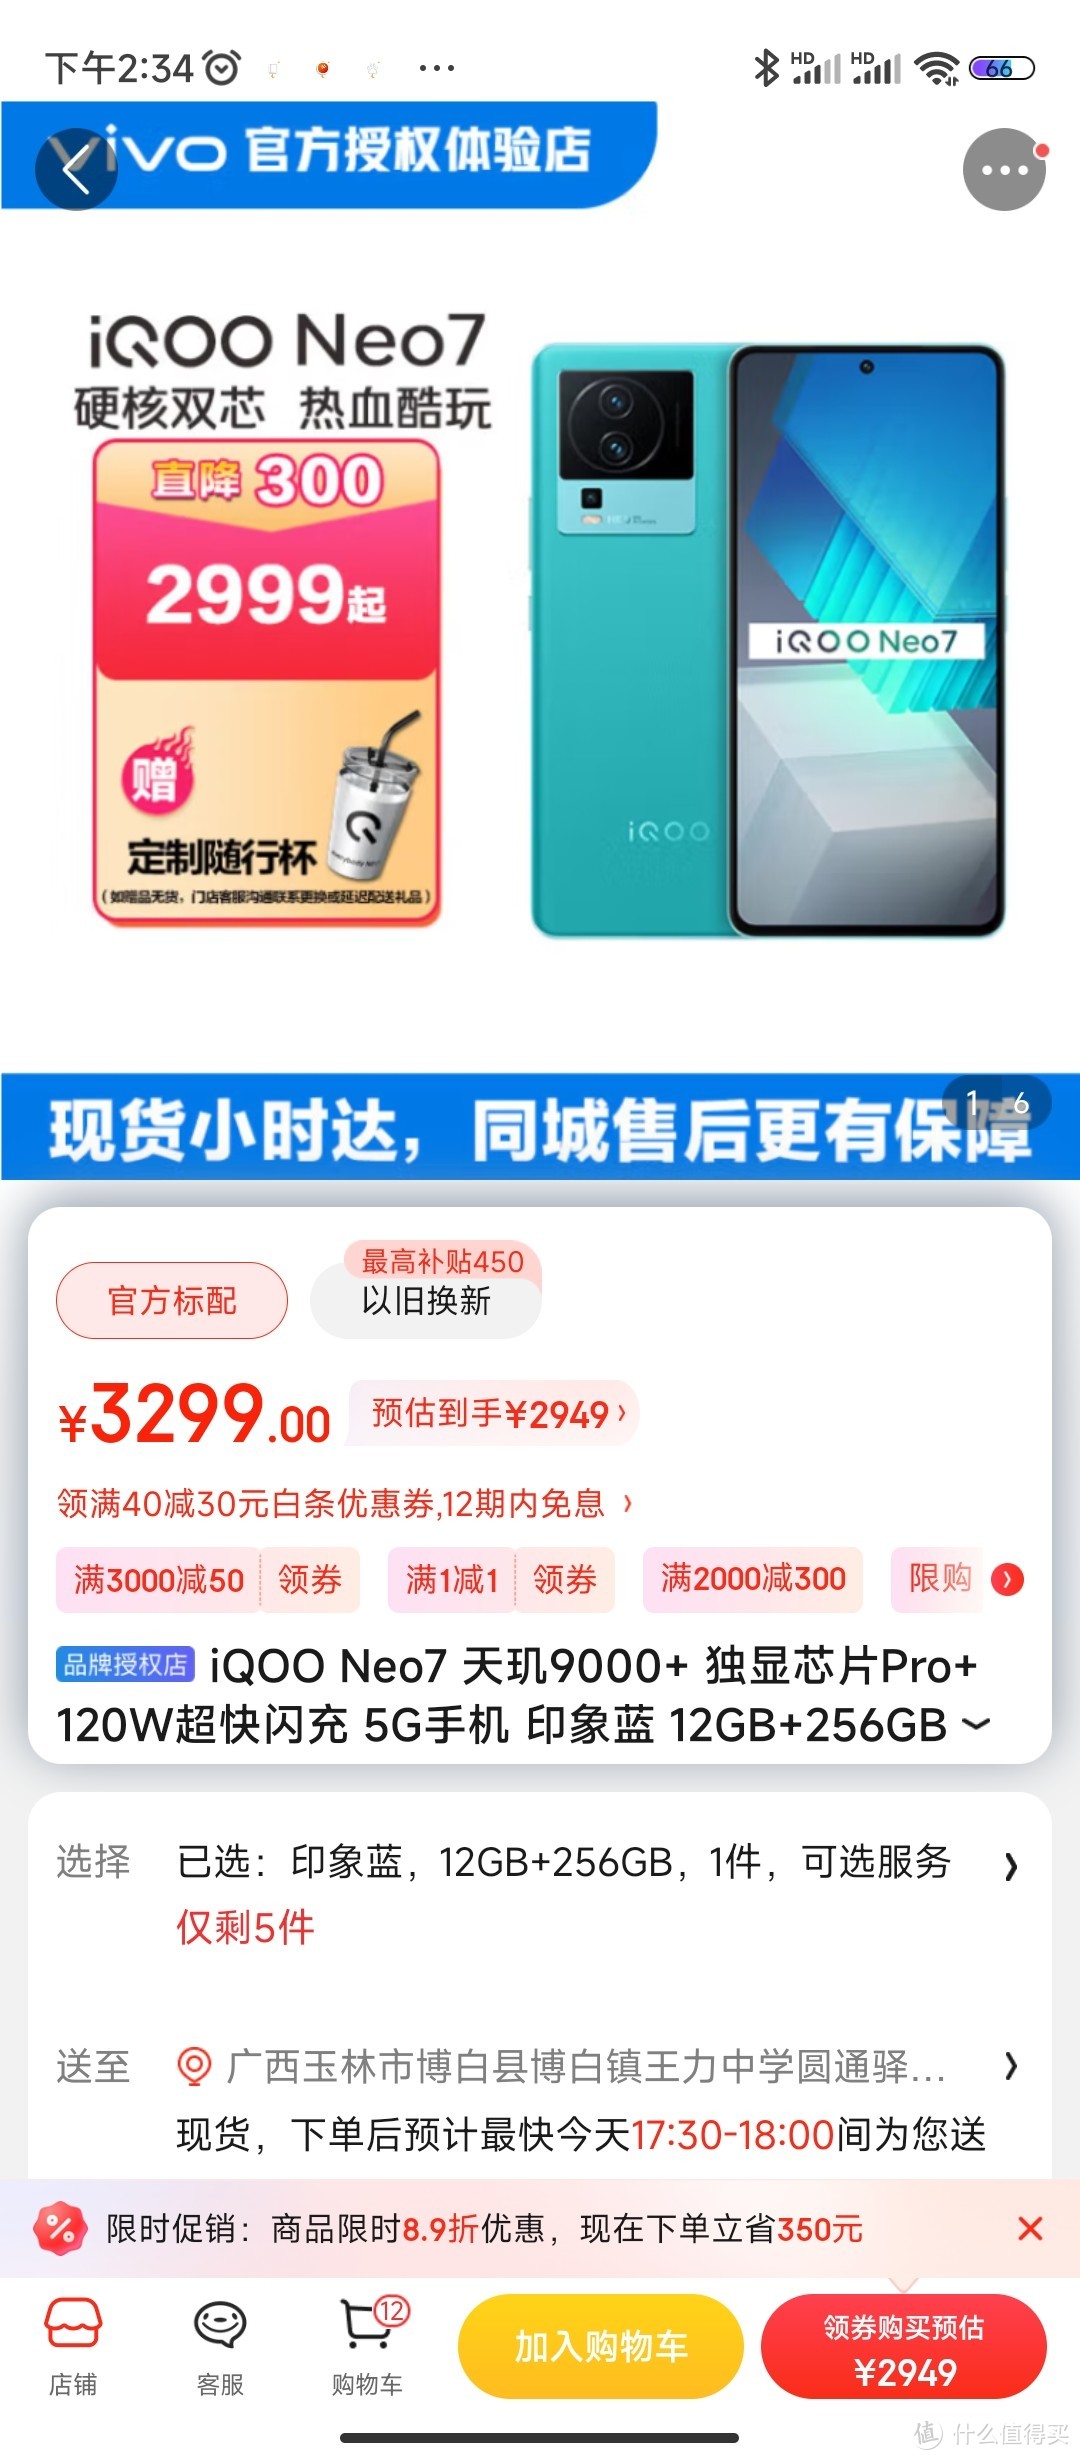 iQOO Neo7 天玑9000+ 独显芯片Pro+ 120W超快闪充 5G手机 印象蓝 12GB+256GB